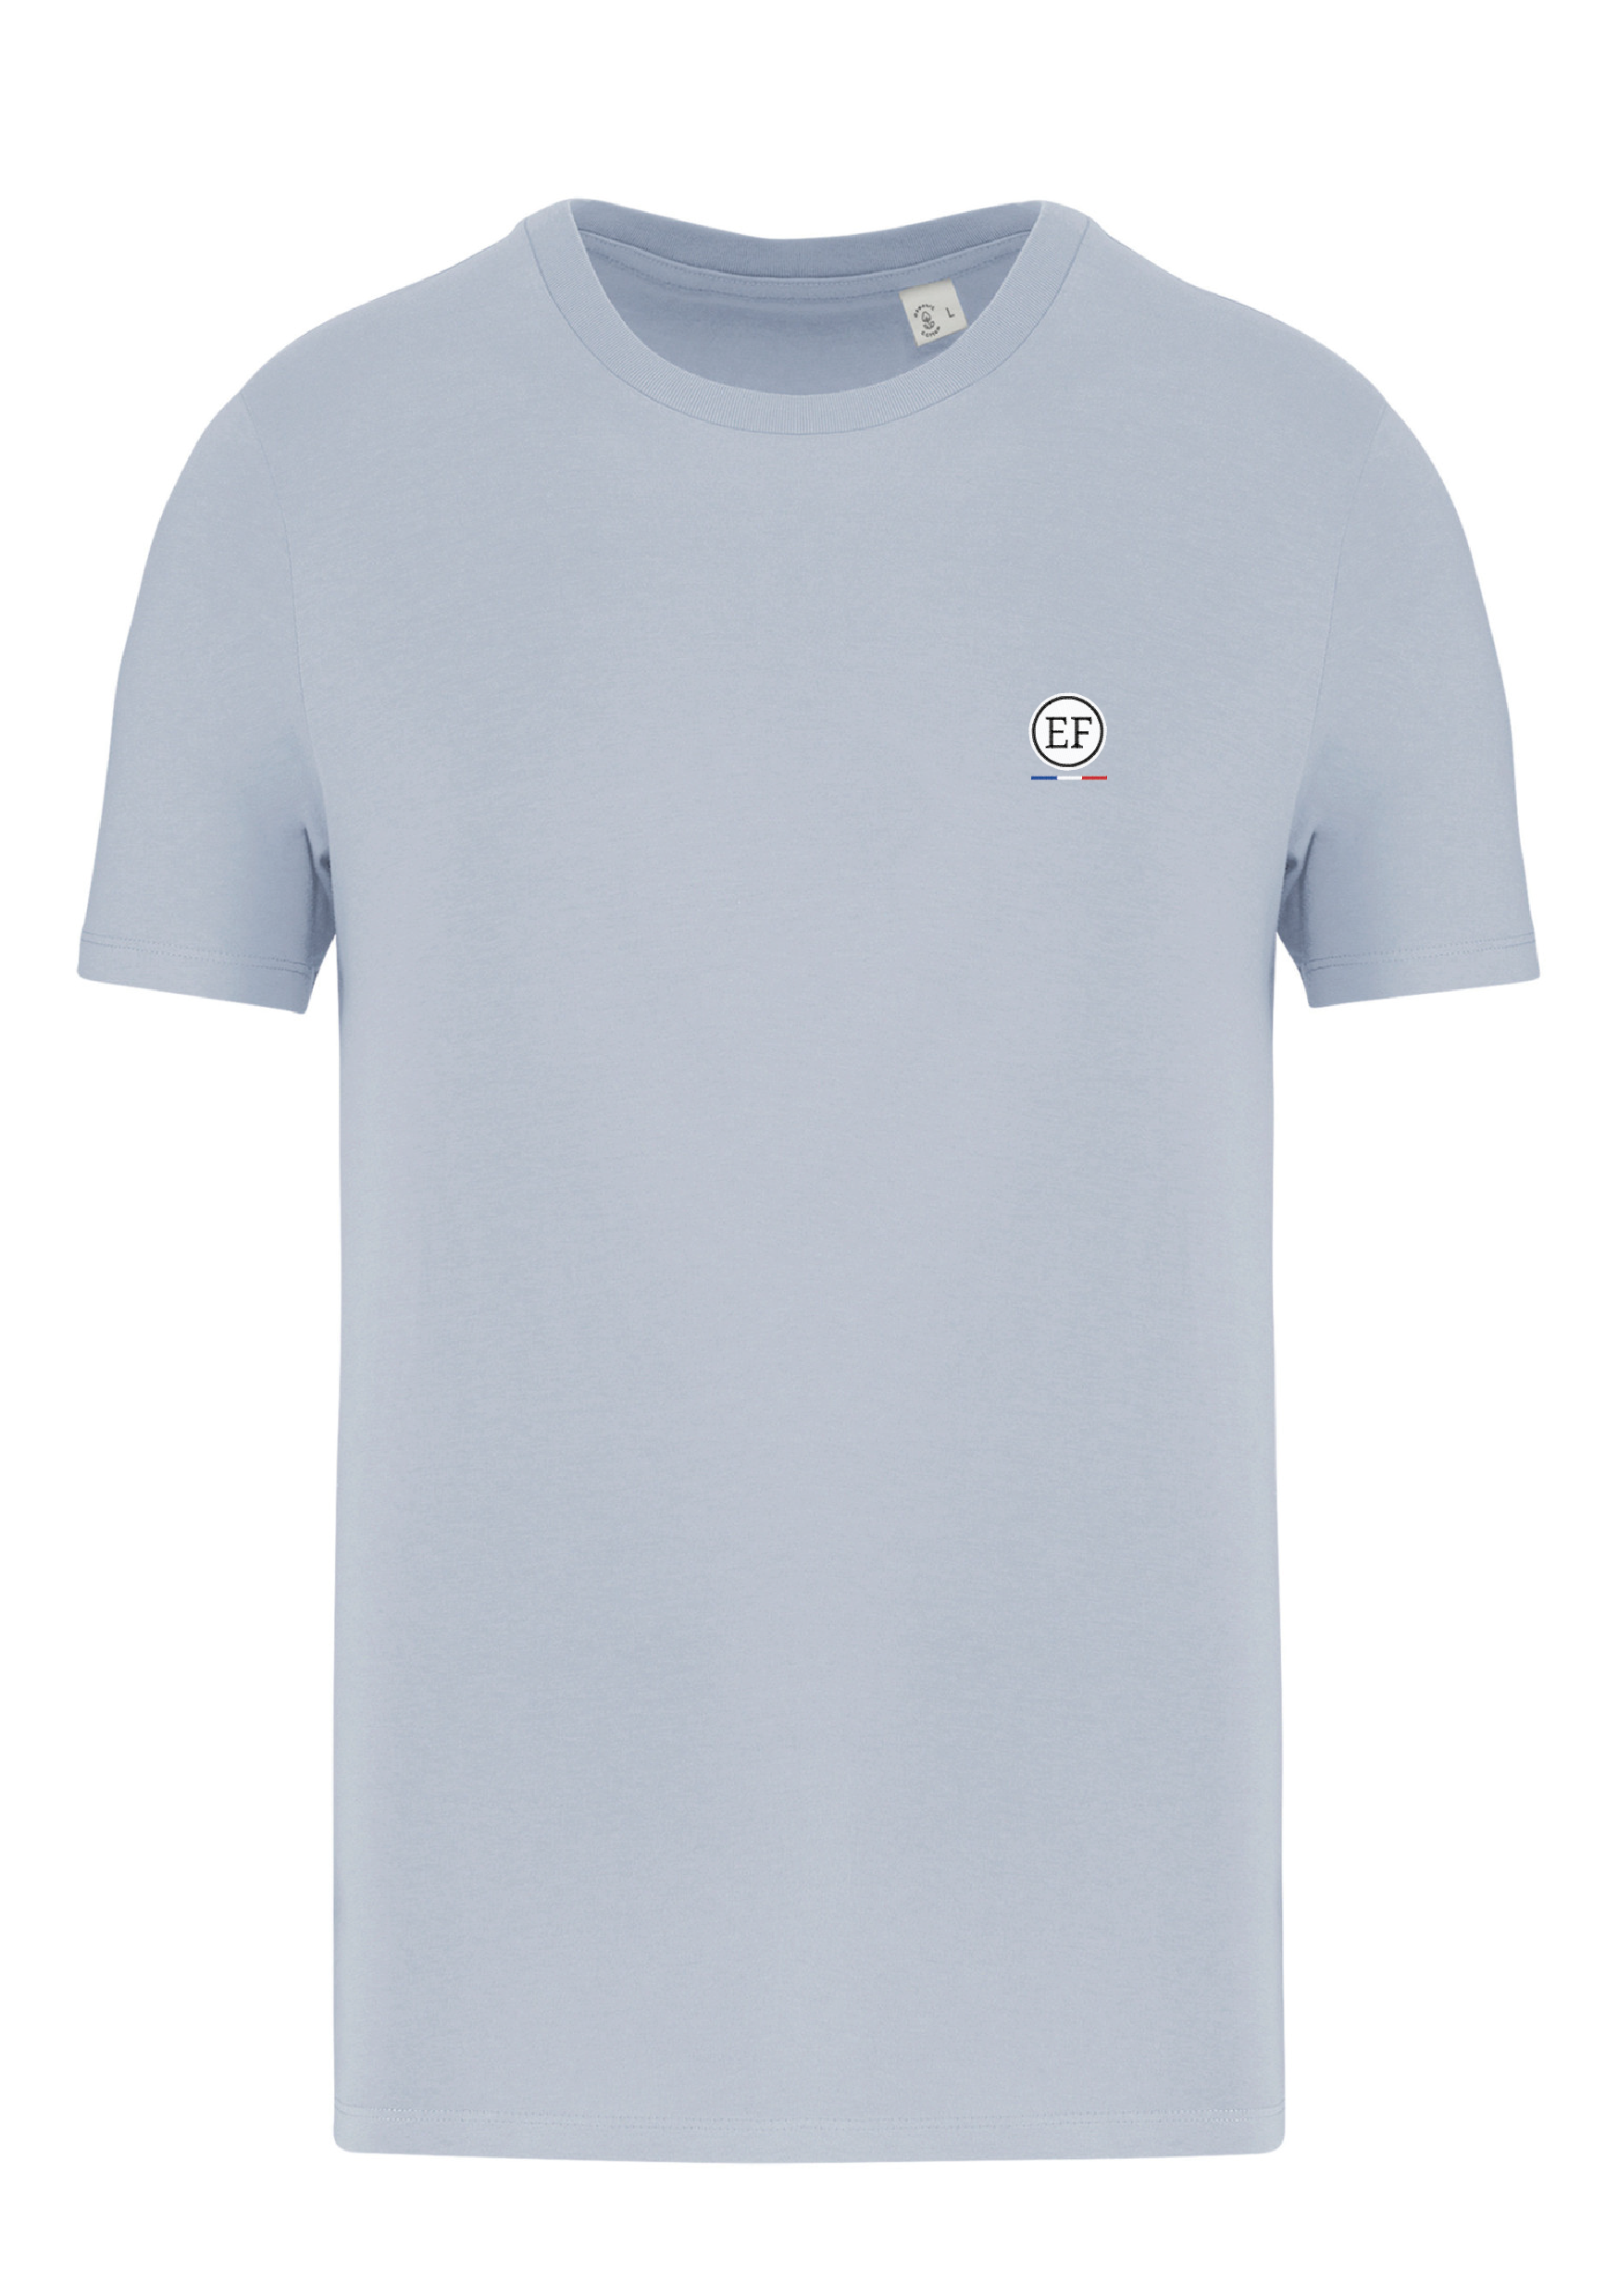 Tee Shirt "EF" Aquamarine